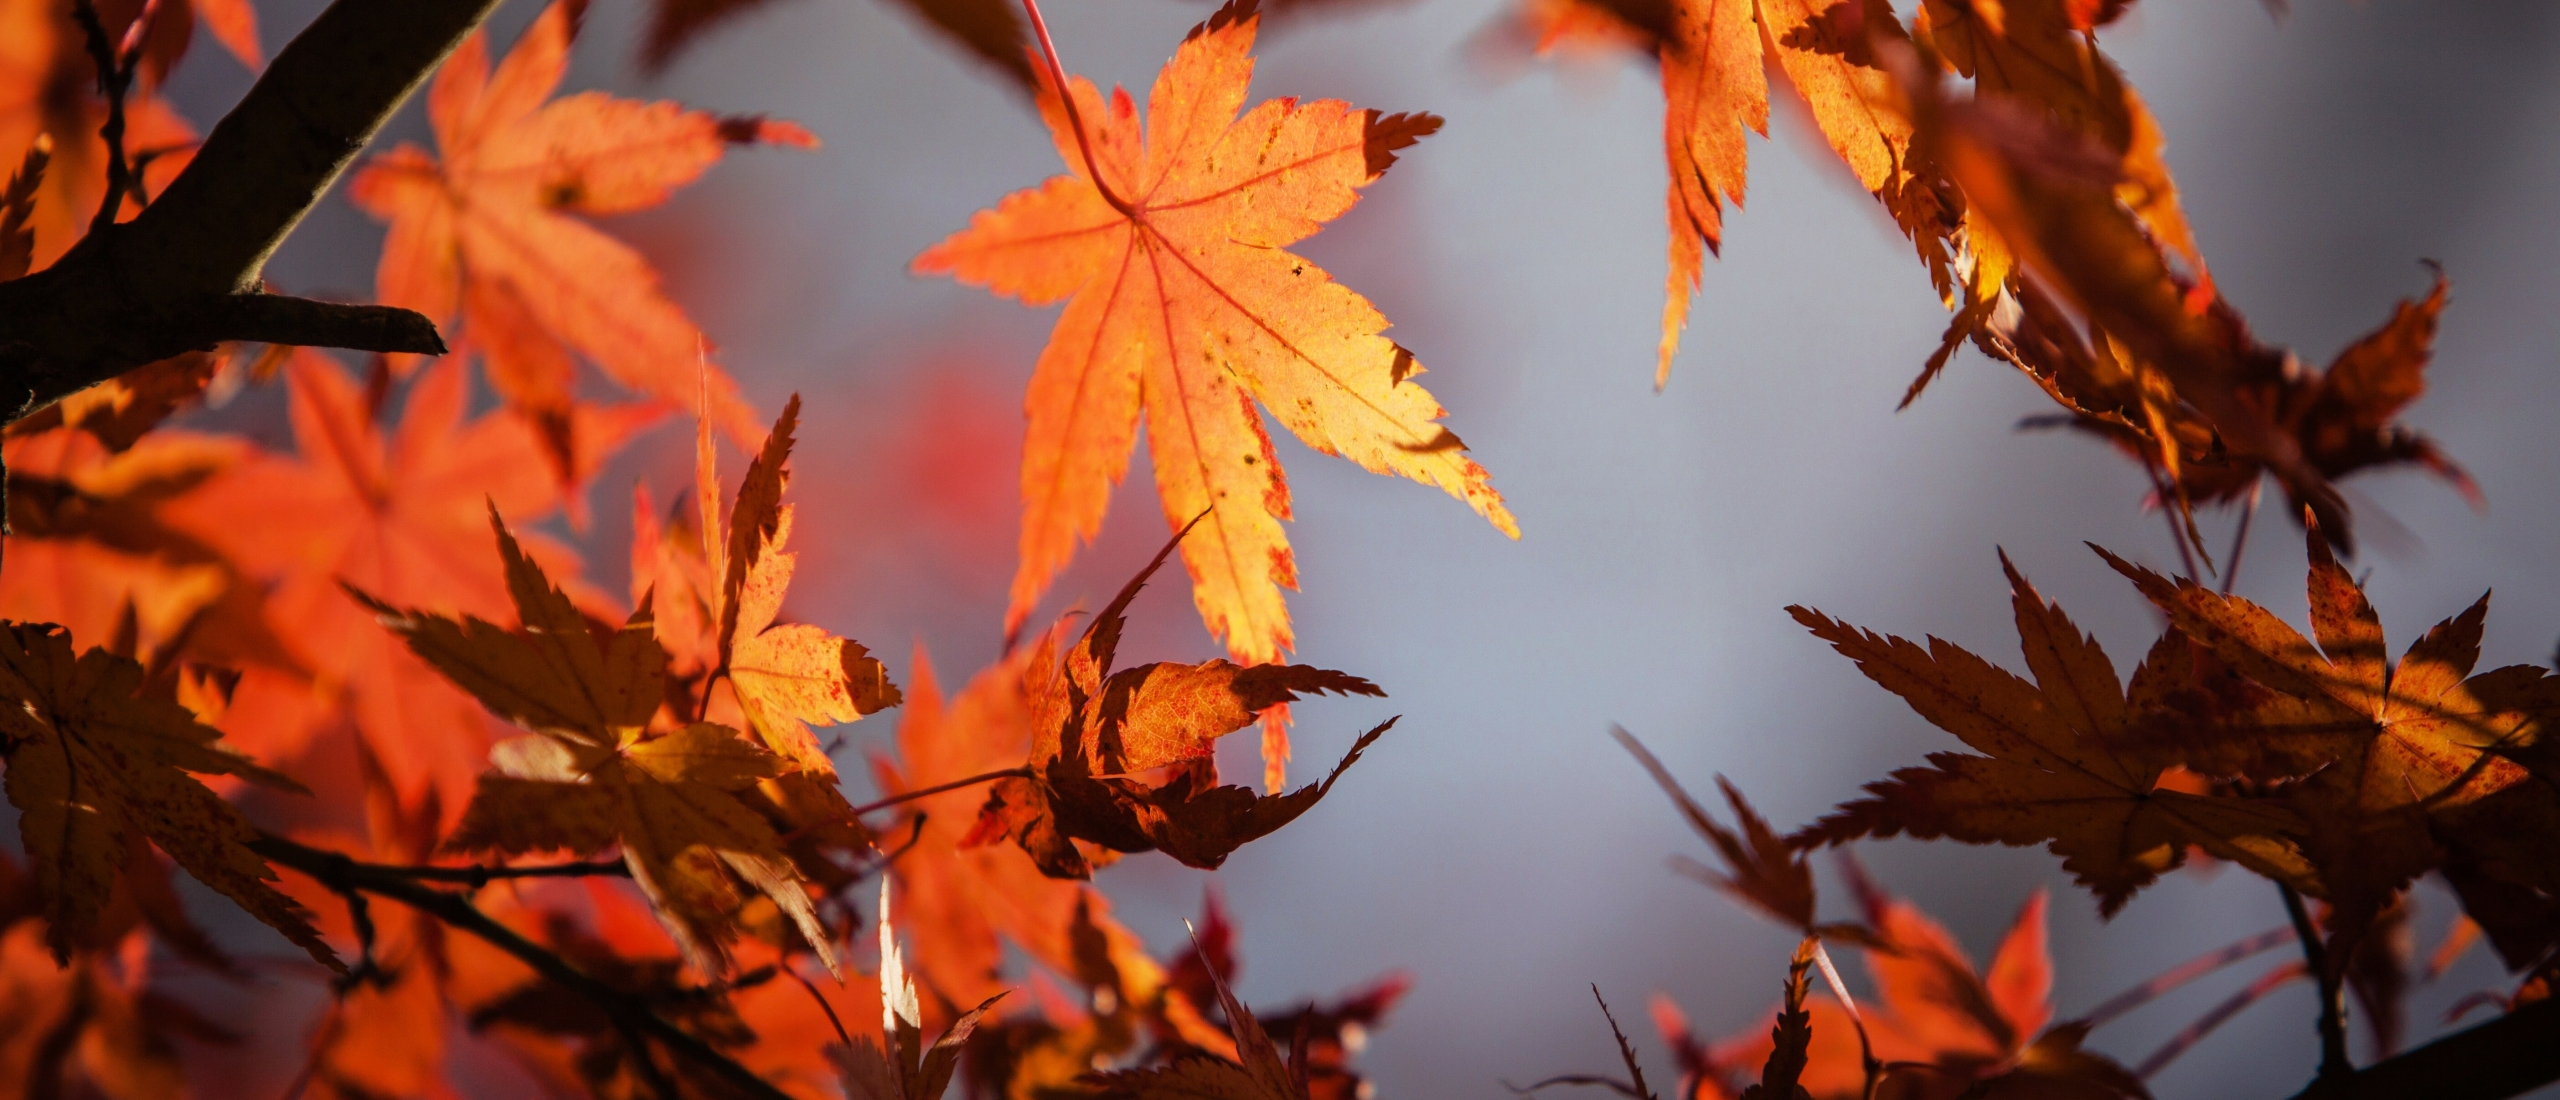 Herfstequinox: 4 dingen die je kunt doen bij de overgang van de zomer naar de herfst